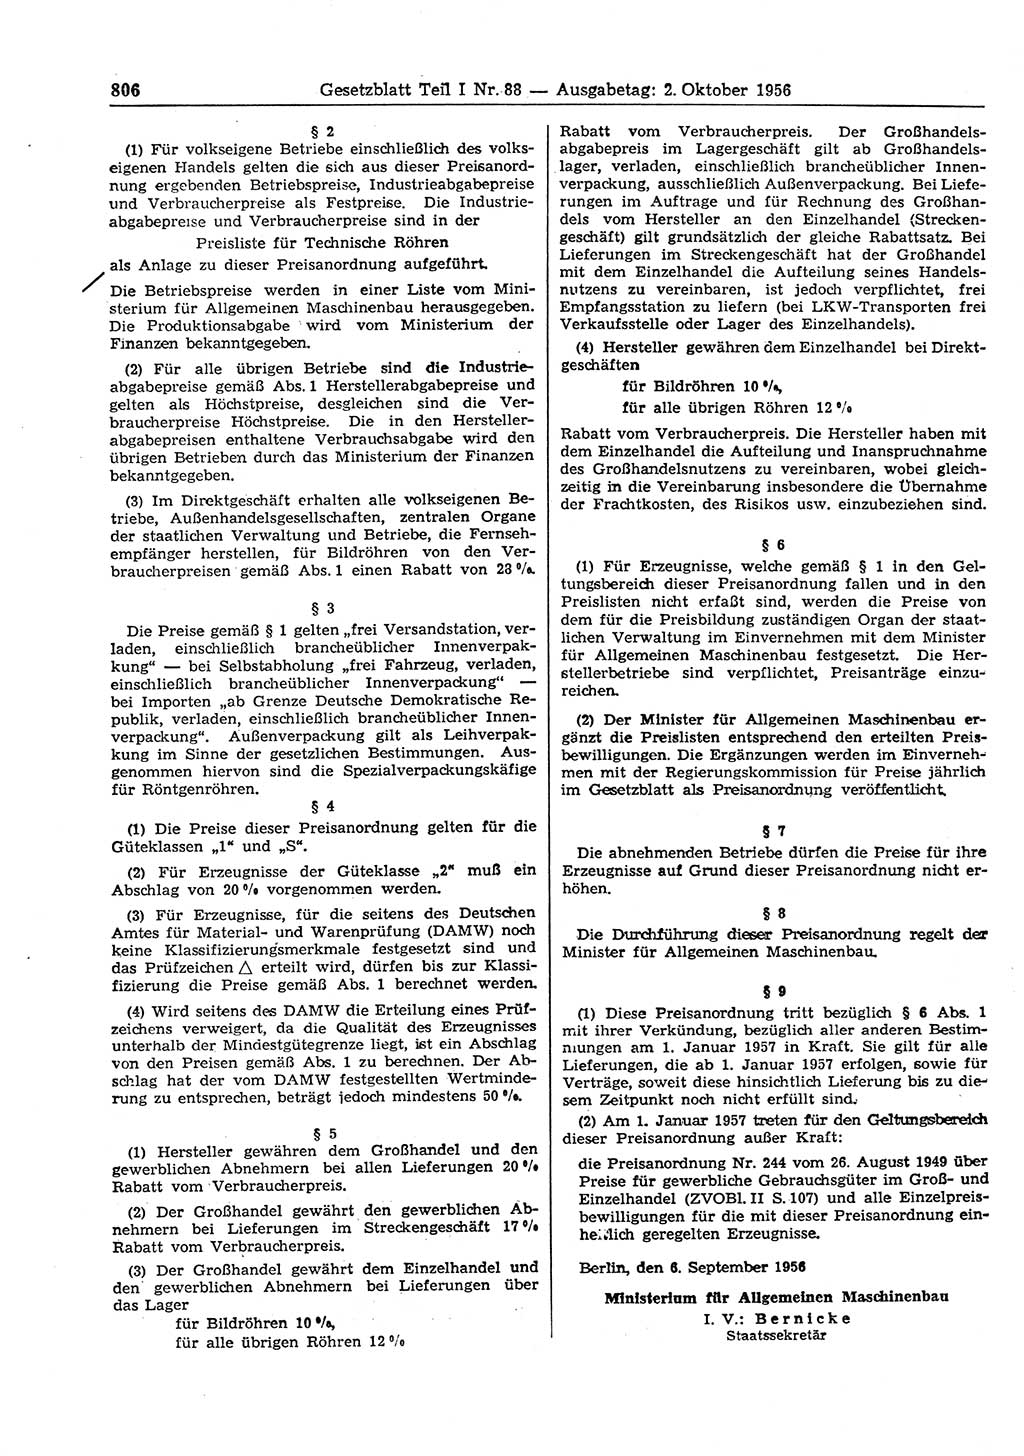 Gesetzblatt (GBl.) der Deutschen Demokratischen Republik (DDR) Teil Ⅰ 1956, Seite 806 (GBl. DDR Ⅰ 1956, S. 806)